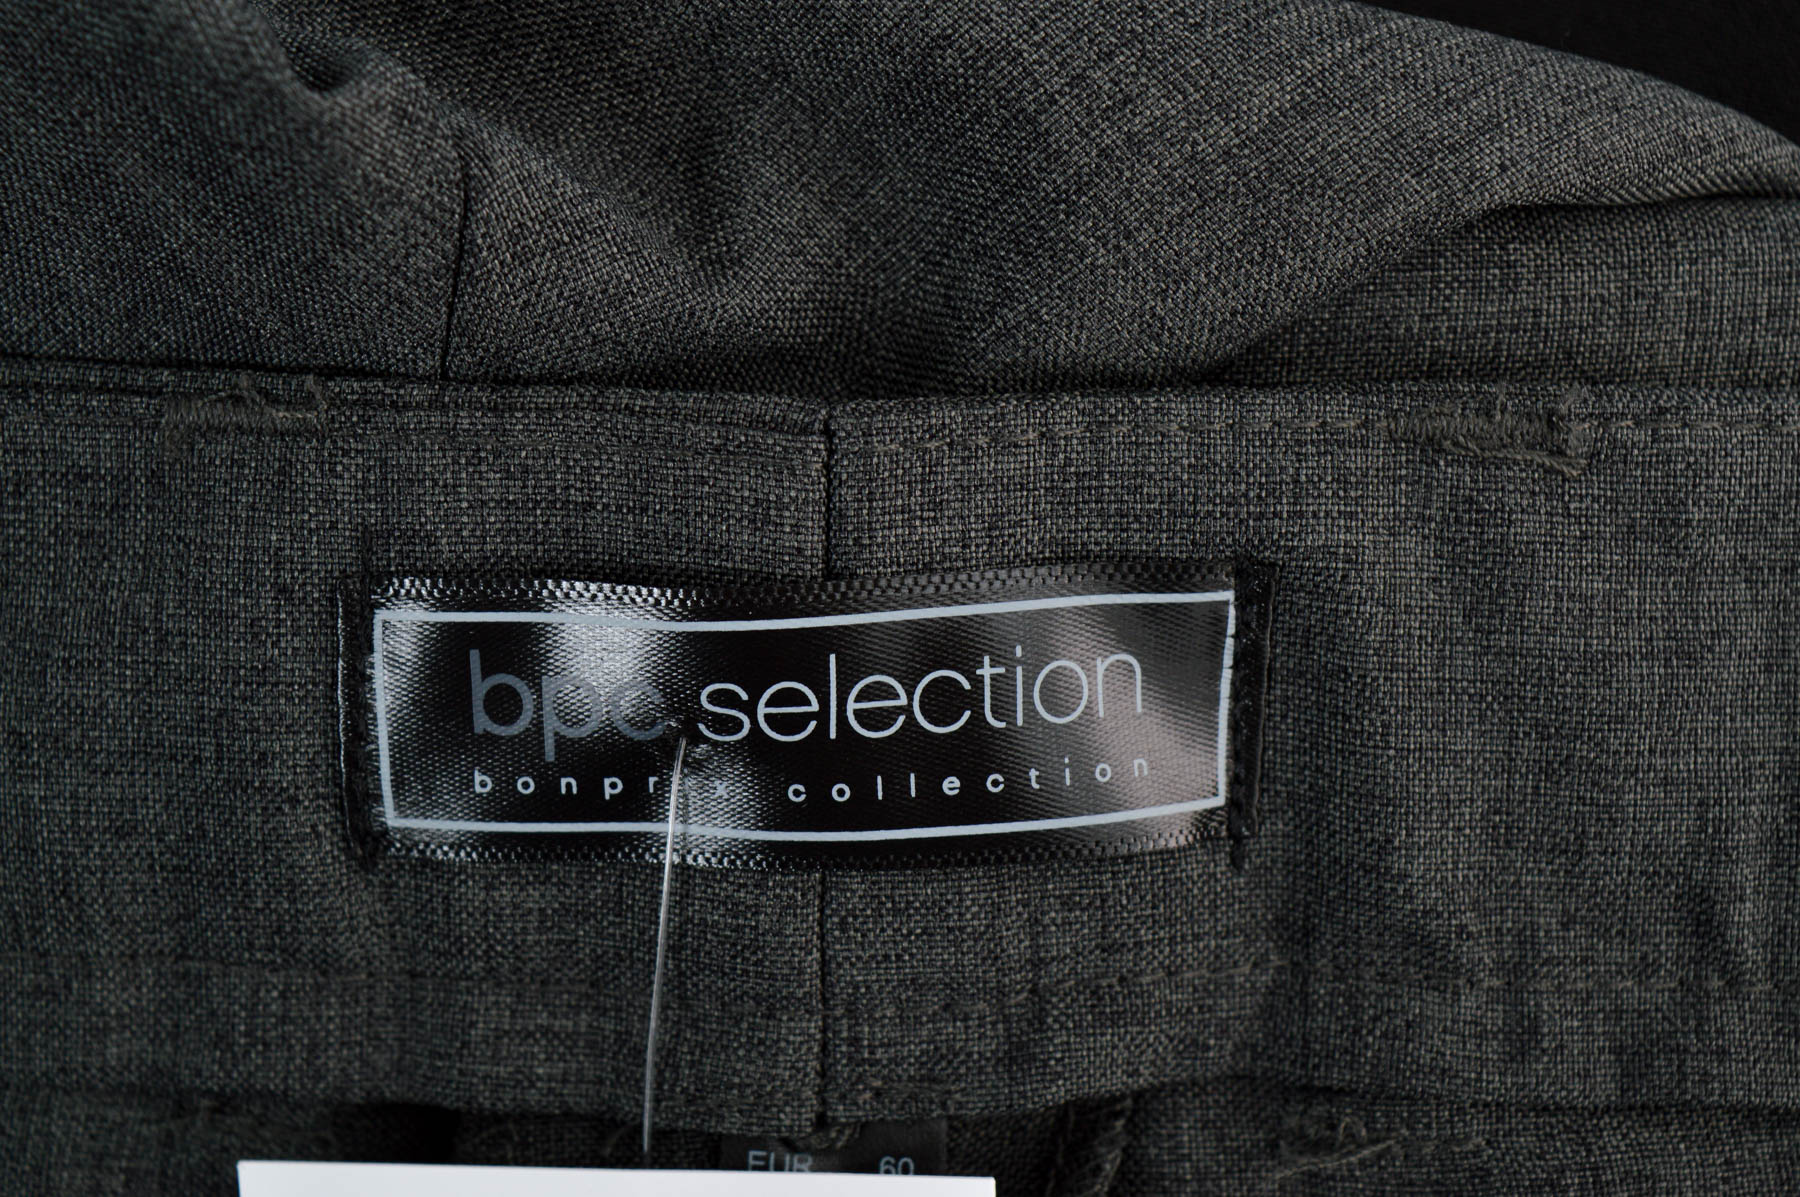 Ανδρικά παντελόνια - Bpc selection bonprix collection - 2